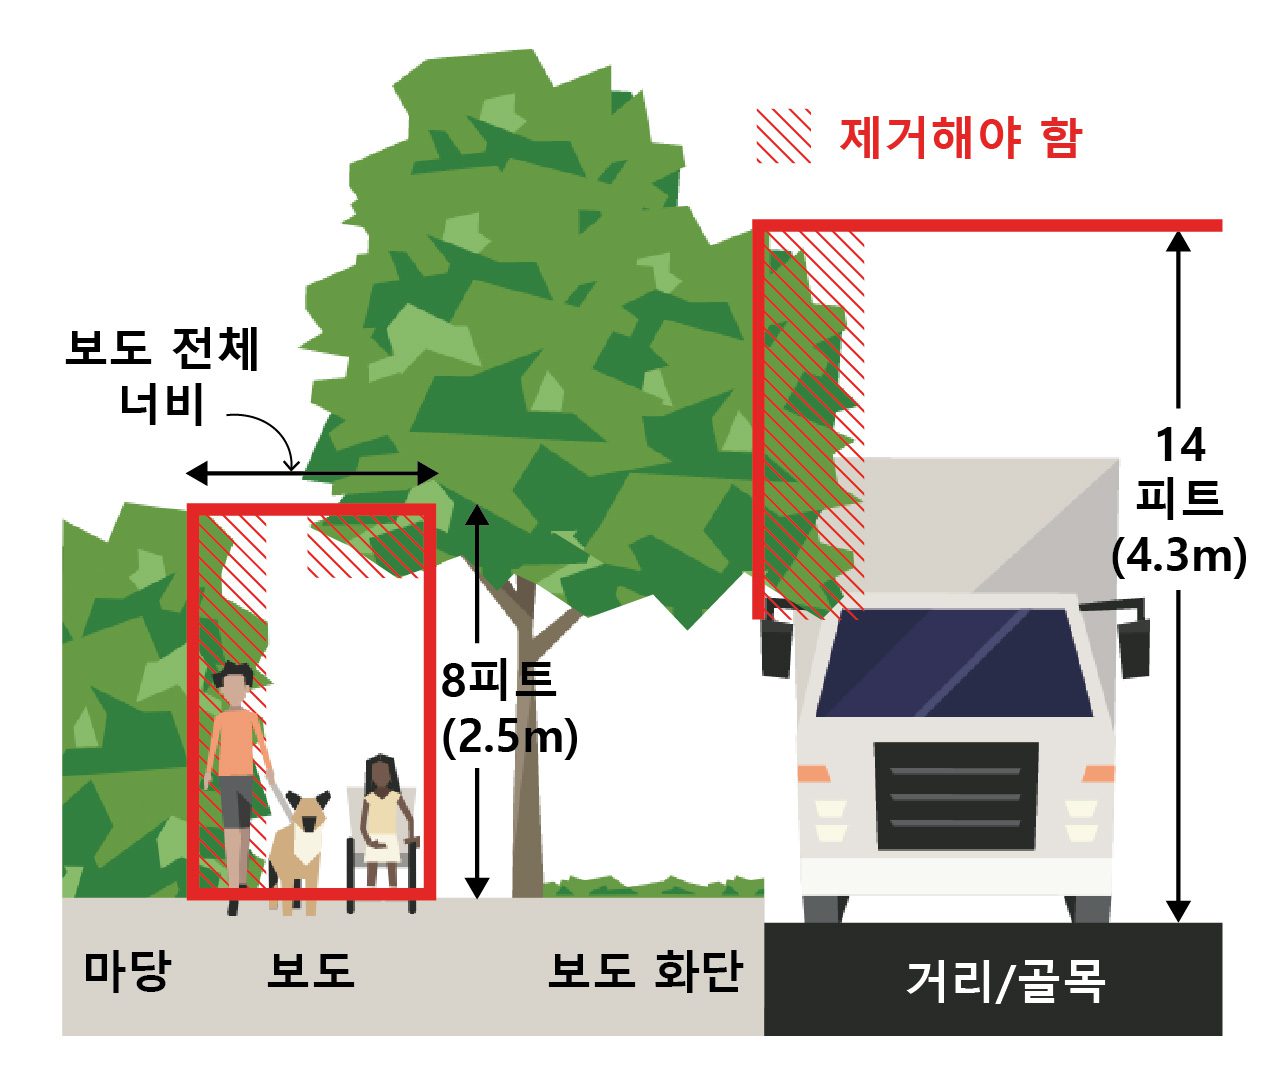 이 그림에서 빨간색으로 표시된 구역은 모든 사람의 안전과 접근성을 위해 관리하고 장애물이 없도록 치워야 하는 책임이 건물 소유자 또는 거주자에게 있습니다. 여기에는 보도 전체 너비를 침범하거나 높이가 8피트(2.5m) 미만인 초목이 포함됩니다. 여기에는 또한 거리나 골목으로 최대 14피트(4.3m) 높이까지 뻗어 있는 나뭇가지들도 포함됩니다. 이미지 제공: SDOT.